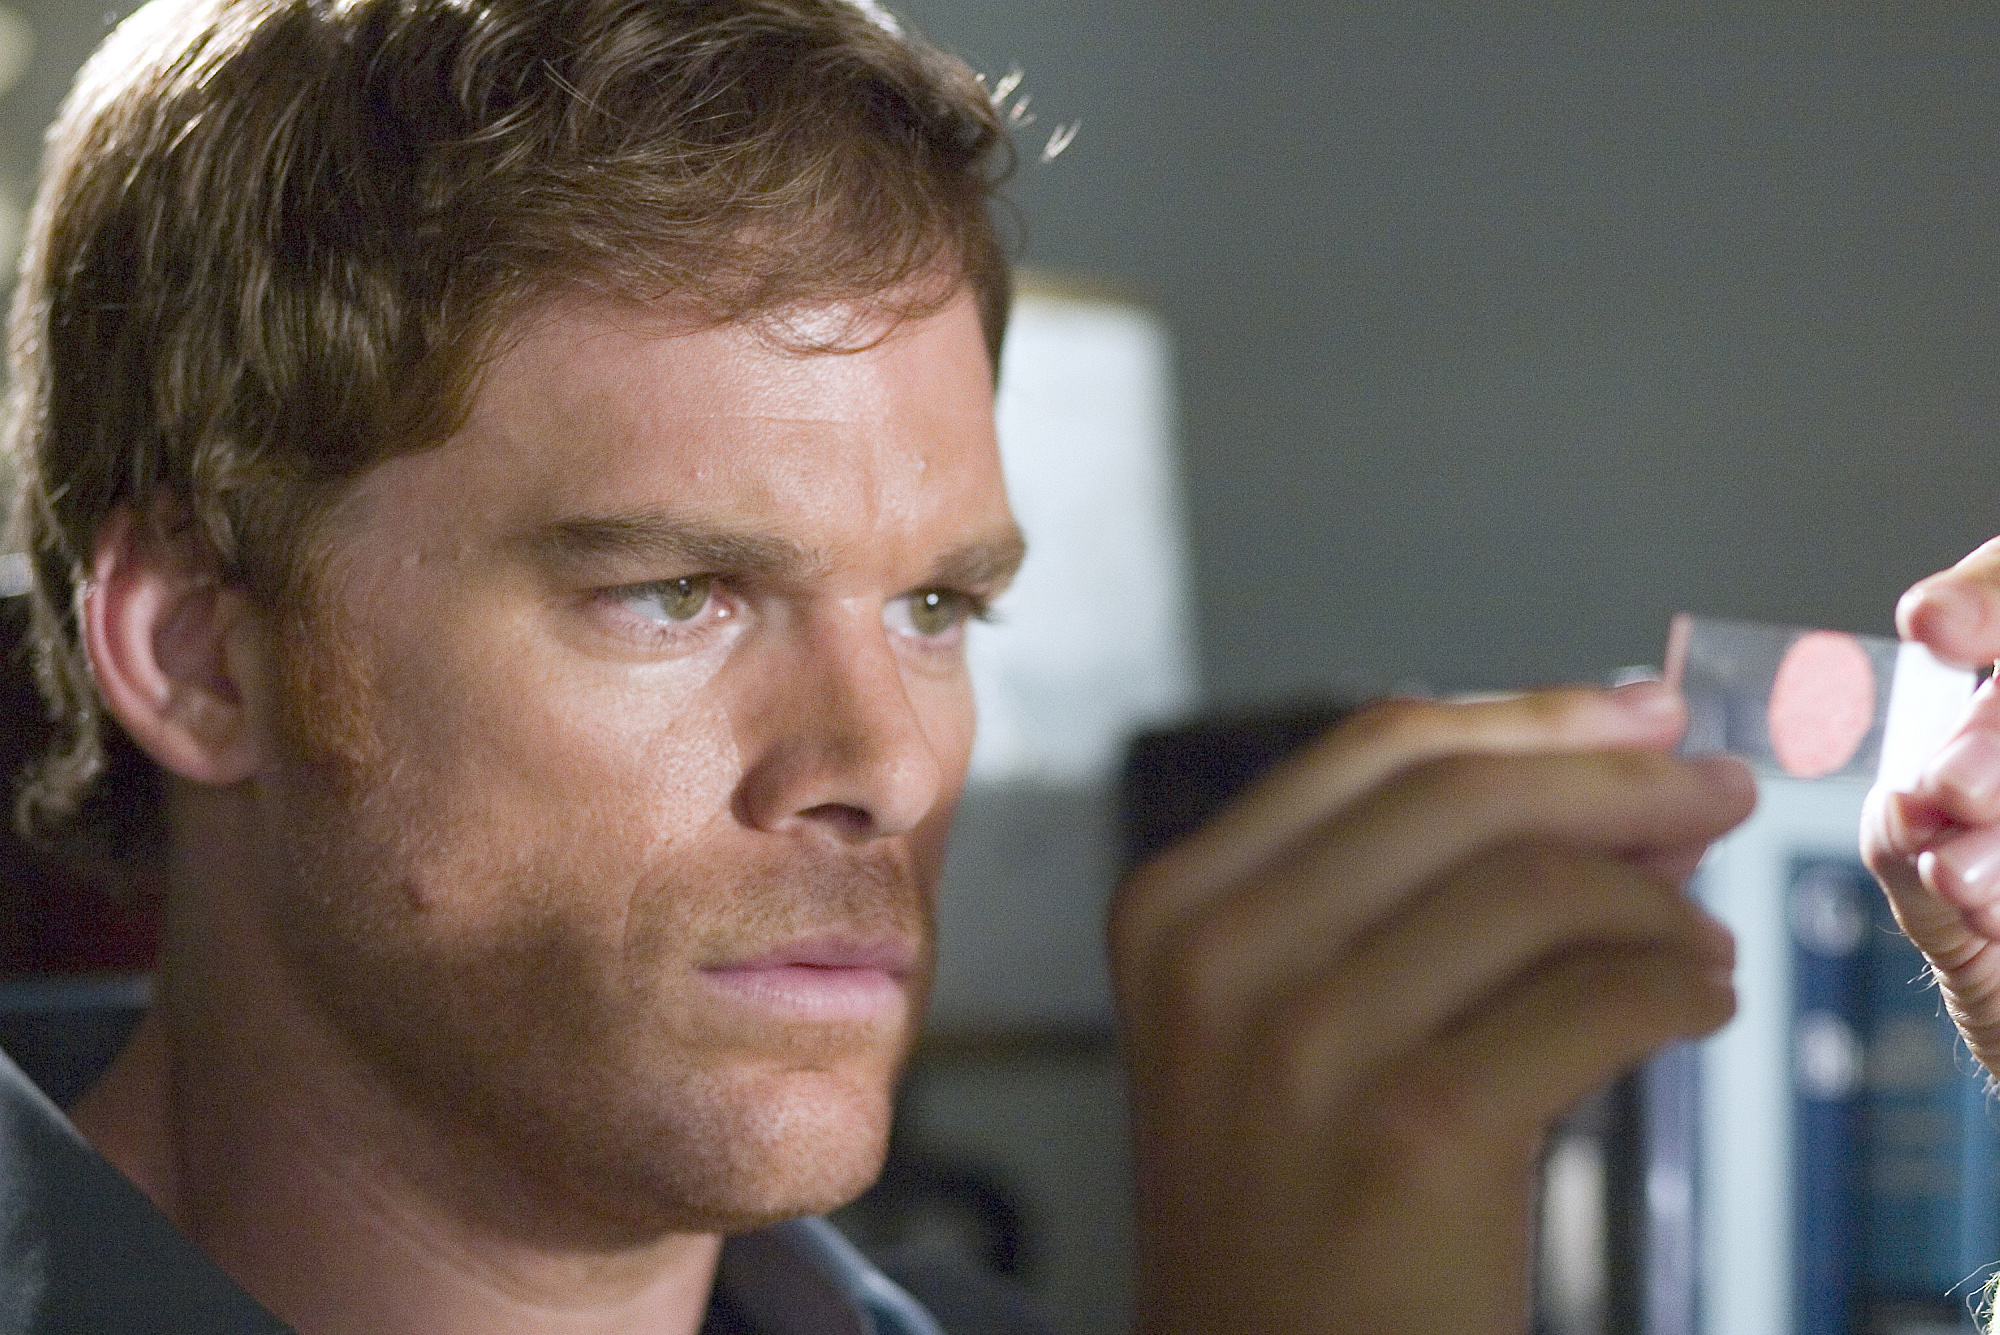 Michael C. Hall in Dexter (2006)